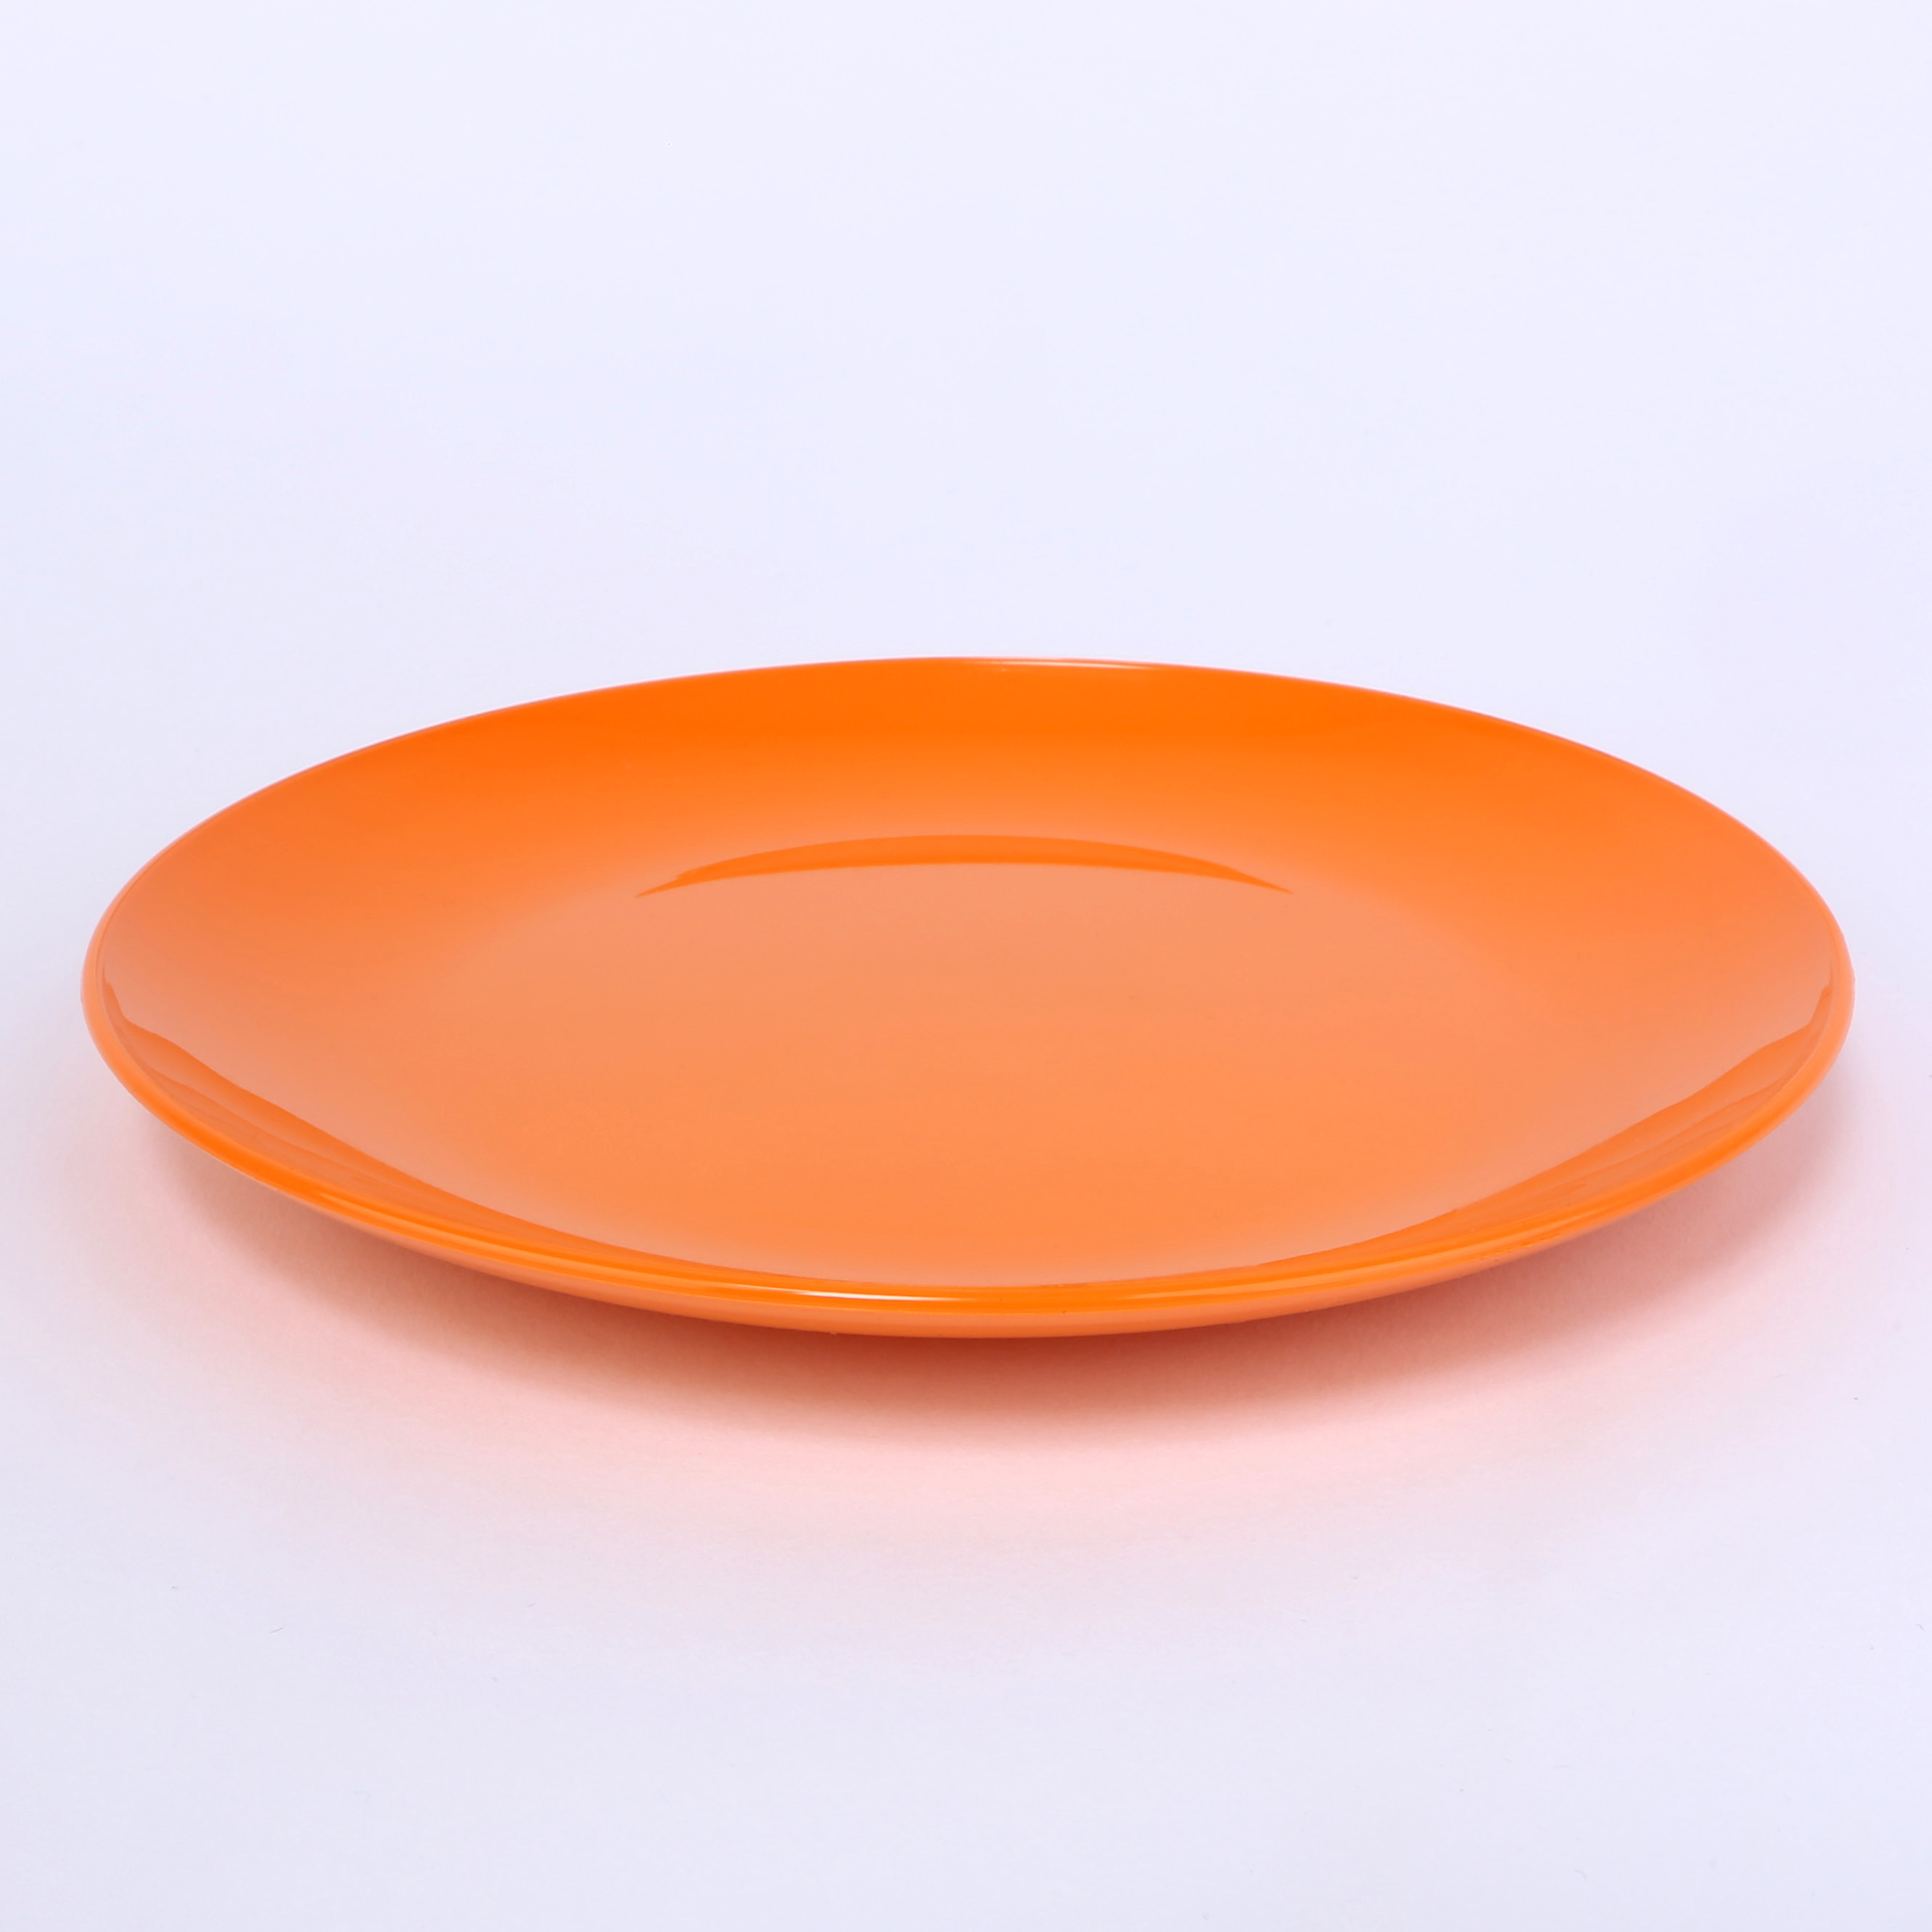 vaLon Zephyr Dessertteller 19 cm aus schadstofffreiem Kunststoff in der Farbe orange.